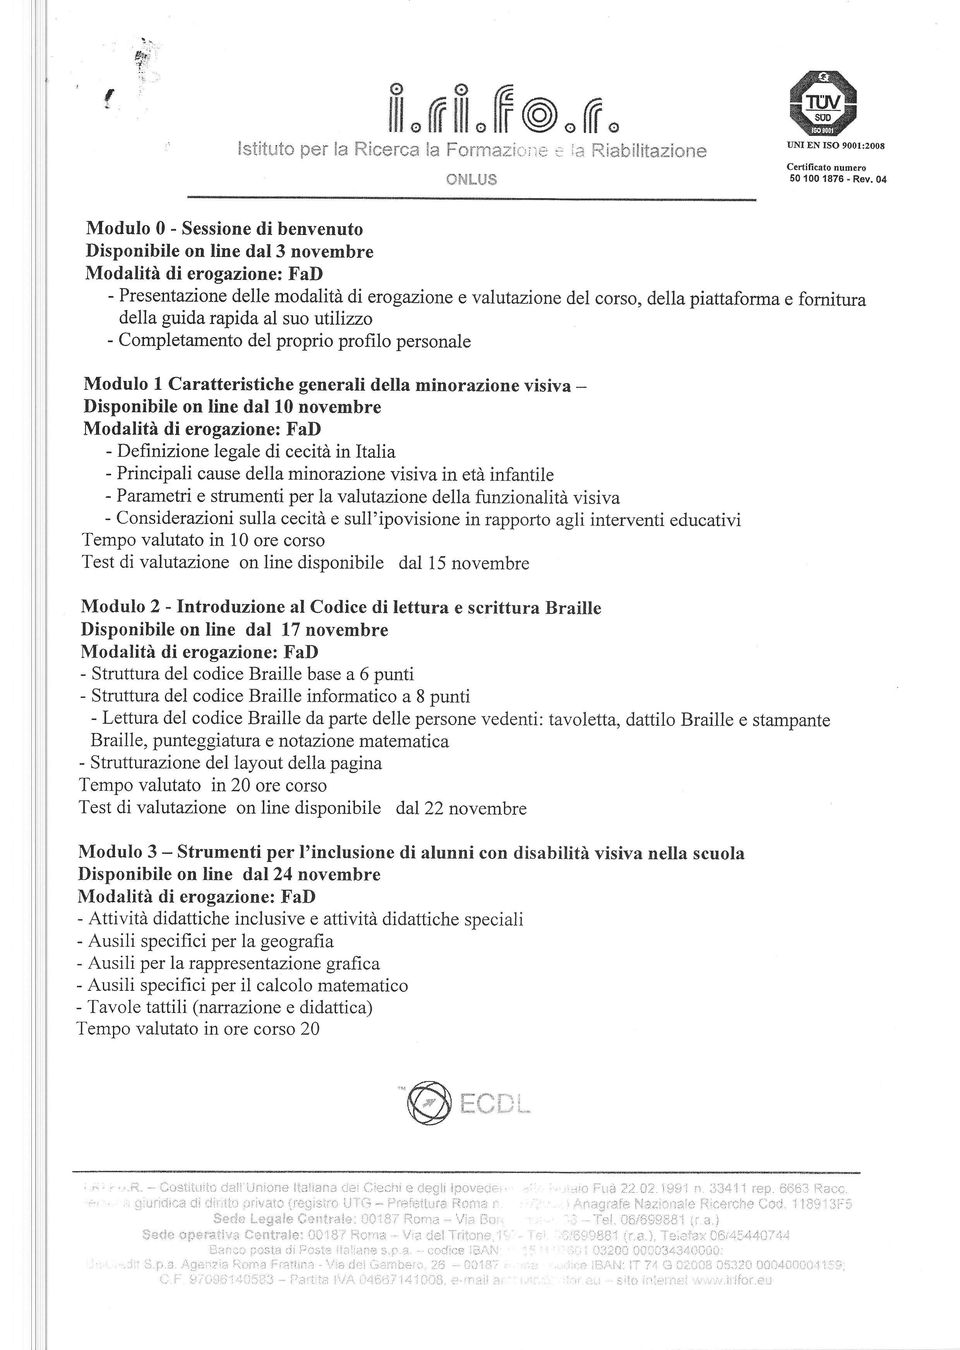 utilizzo - Completamento del proprio profilo personale Modulo I Caratteristiche generali della minorazione visiva - Disponibile on line dal l0 novembre - Definizione legale di cecità in Italia -